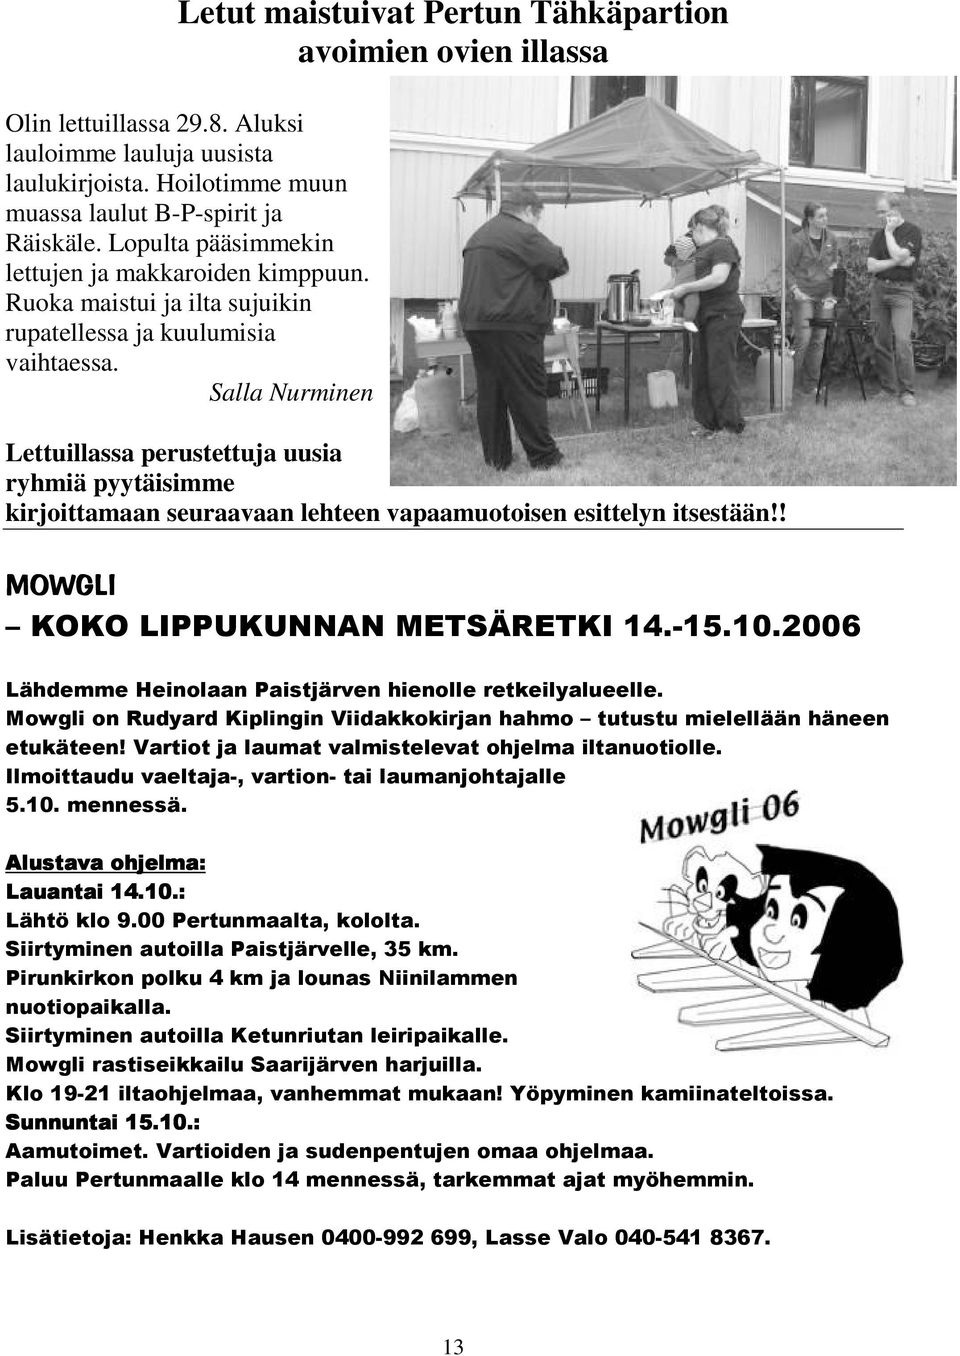 Salla Nurminen Lettuillassa perustettuja uusia ryhmiä pyytäisimme kirjoittamaan seuraavaan lehteen vapaamuotoisen esittelyn itsestään!!!"## #$%&'(!""'%)"*#"+""!,-"! +*#'." - /#))!)'&# #!